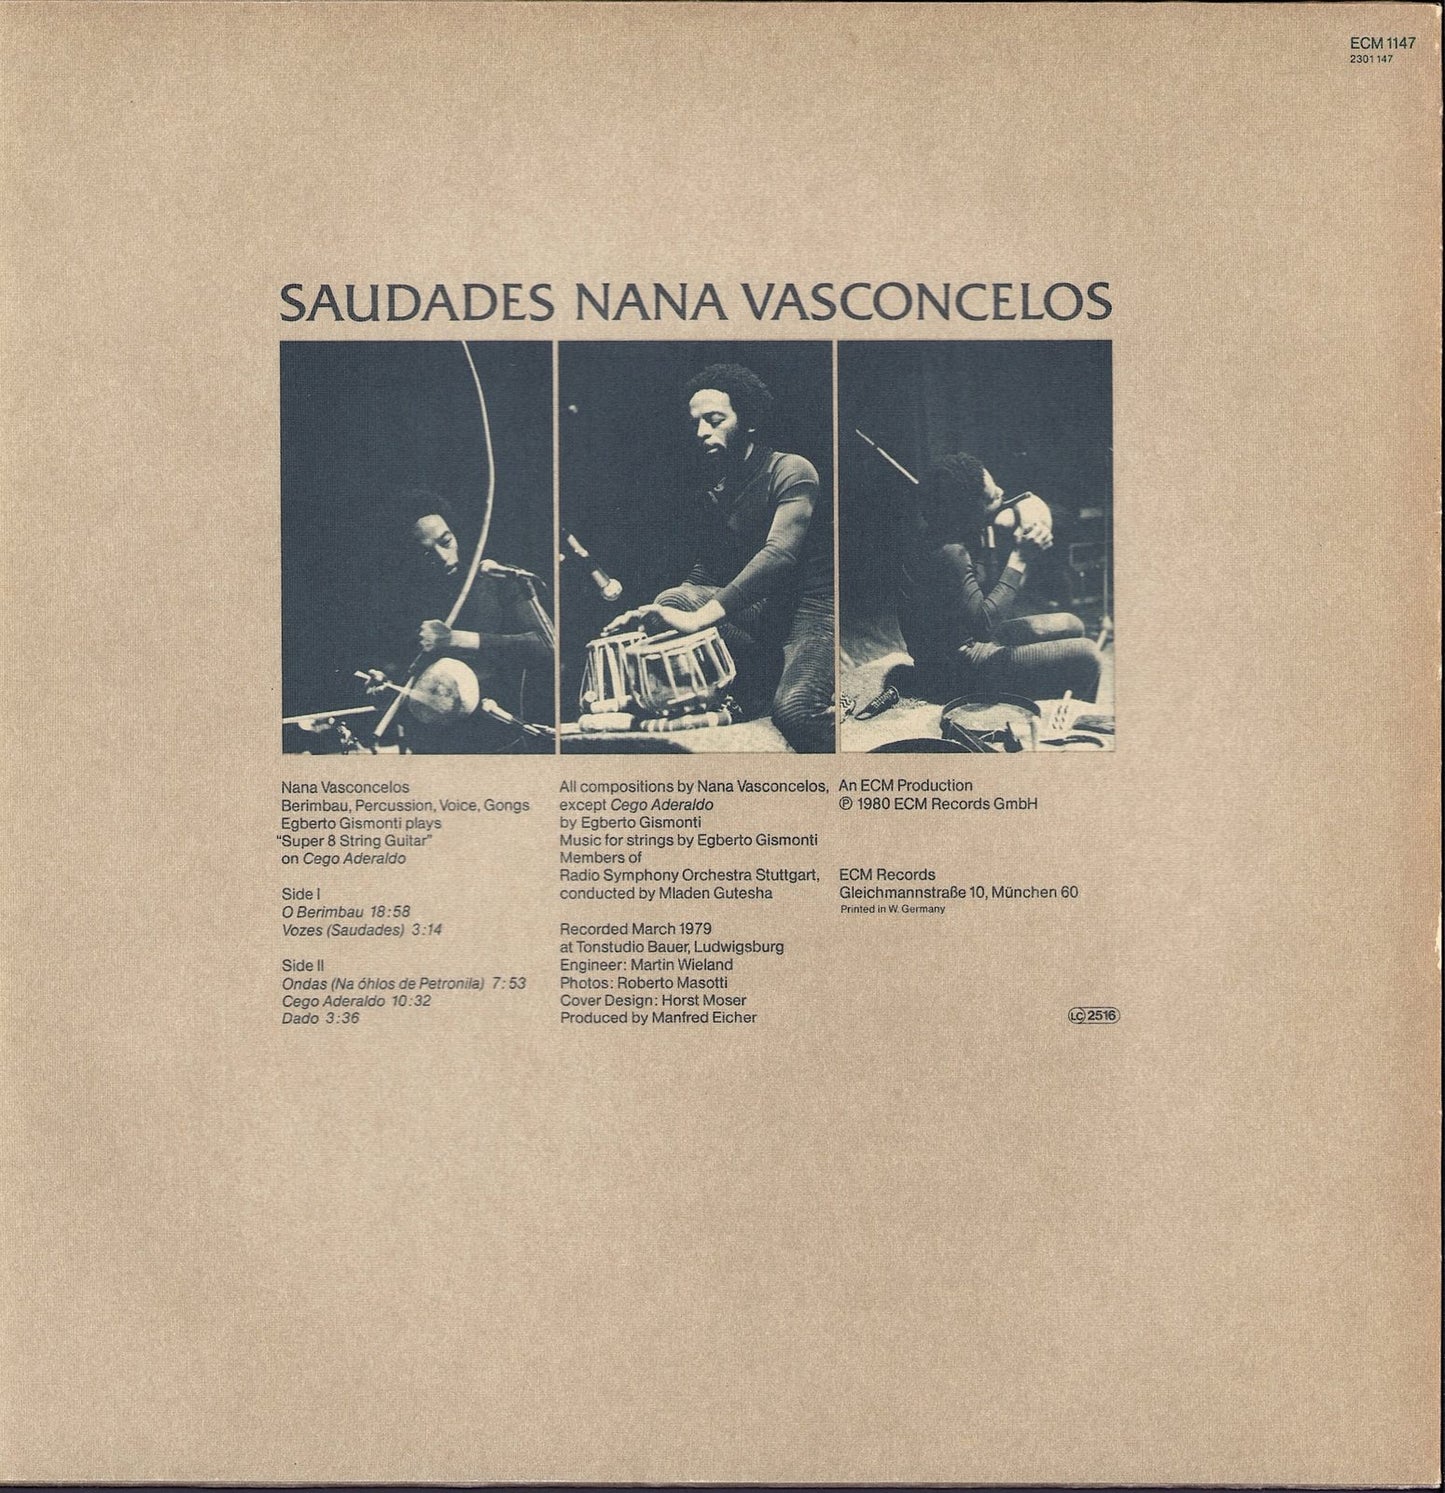 Nana Vasconcelos - Saudades Vinyl LP ECM Records